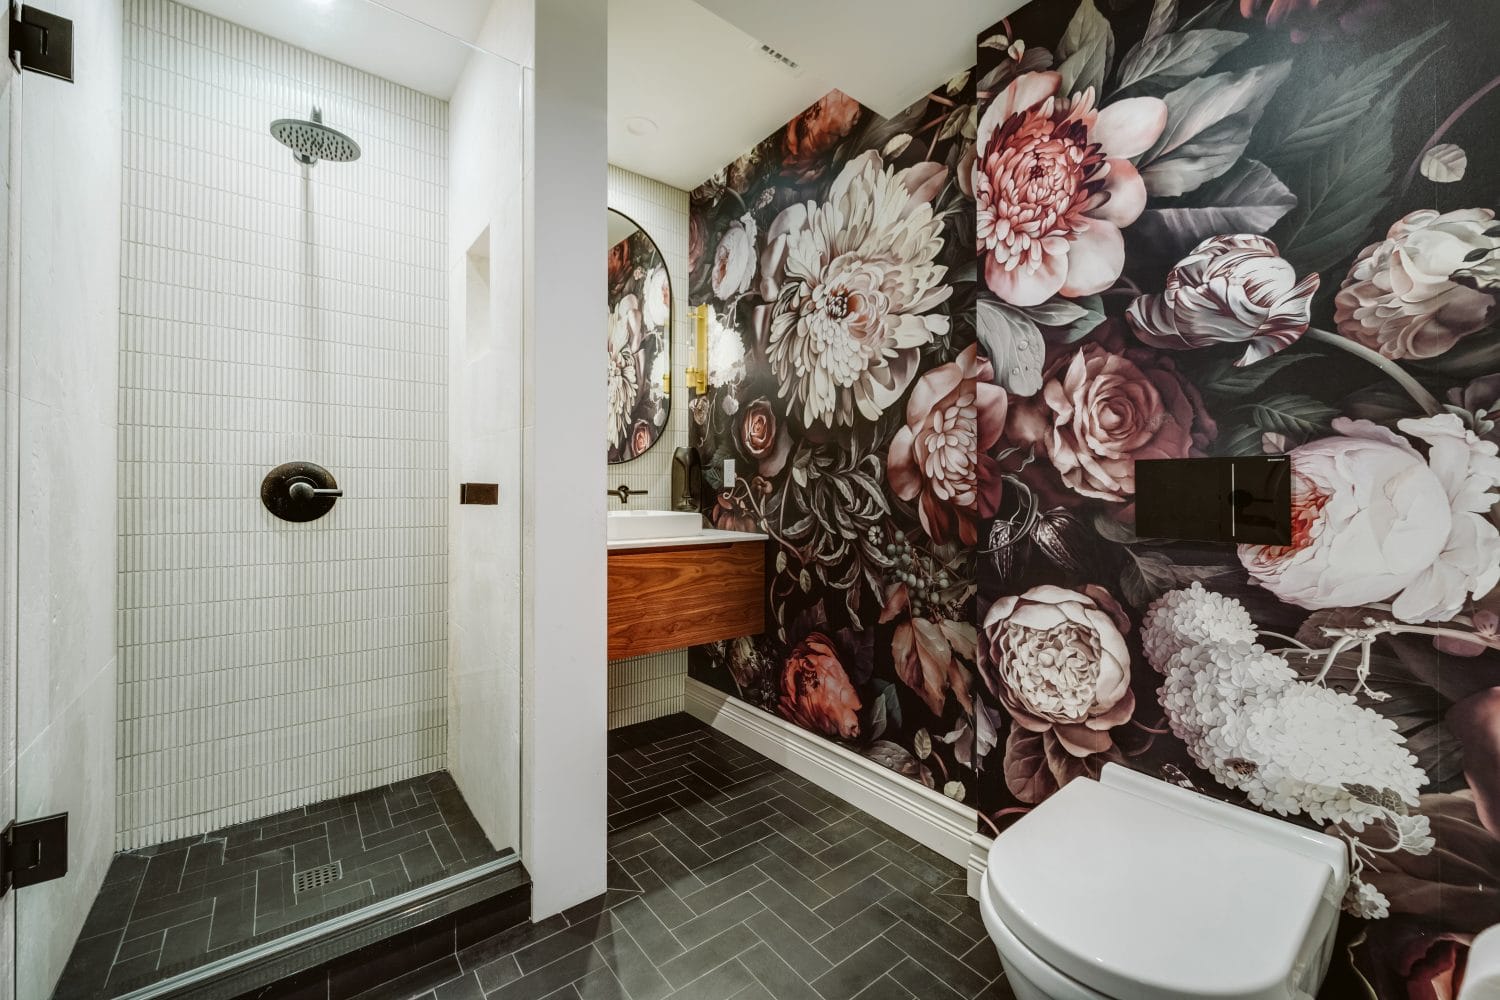 Boho Beach bathroom: Jupiter, FL villa fun flower wallpaper bathroom